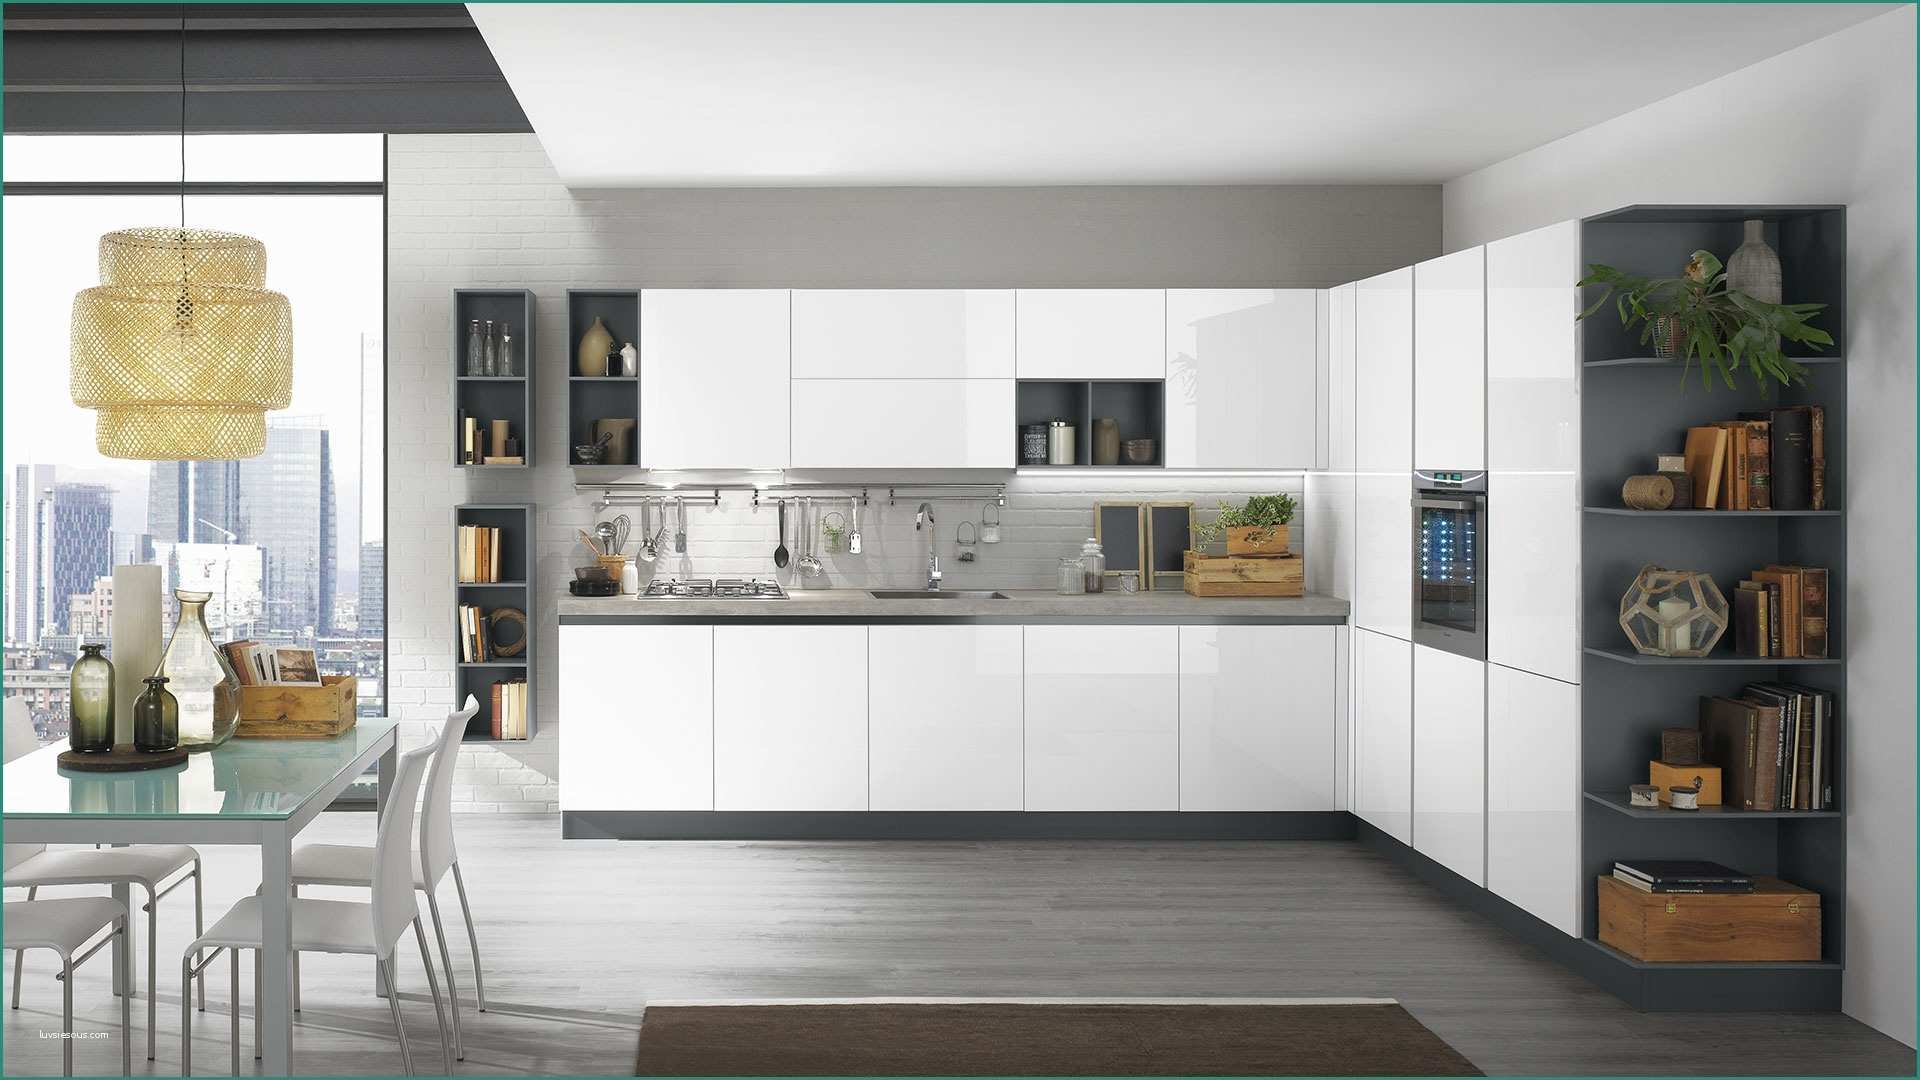 Cucina Lineare Moderna E Immagini Di Cucine Moderne Excellent soggiorno Open Space soggiorno